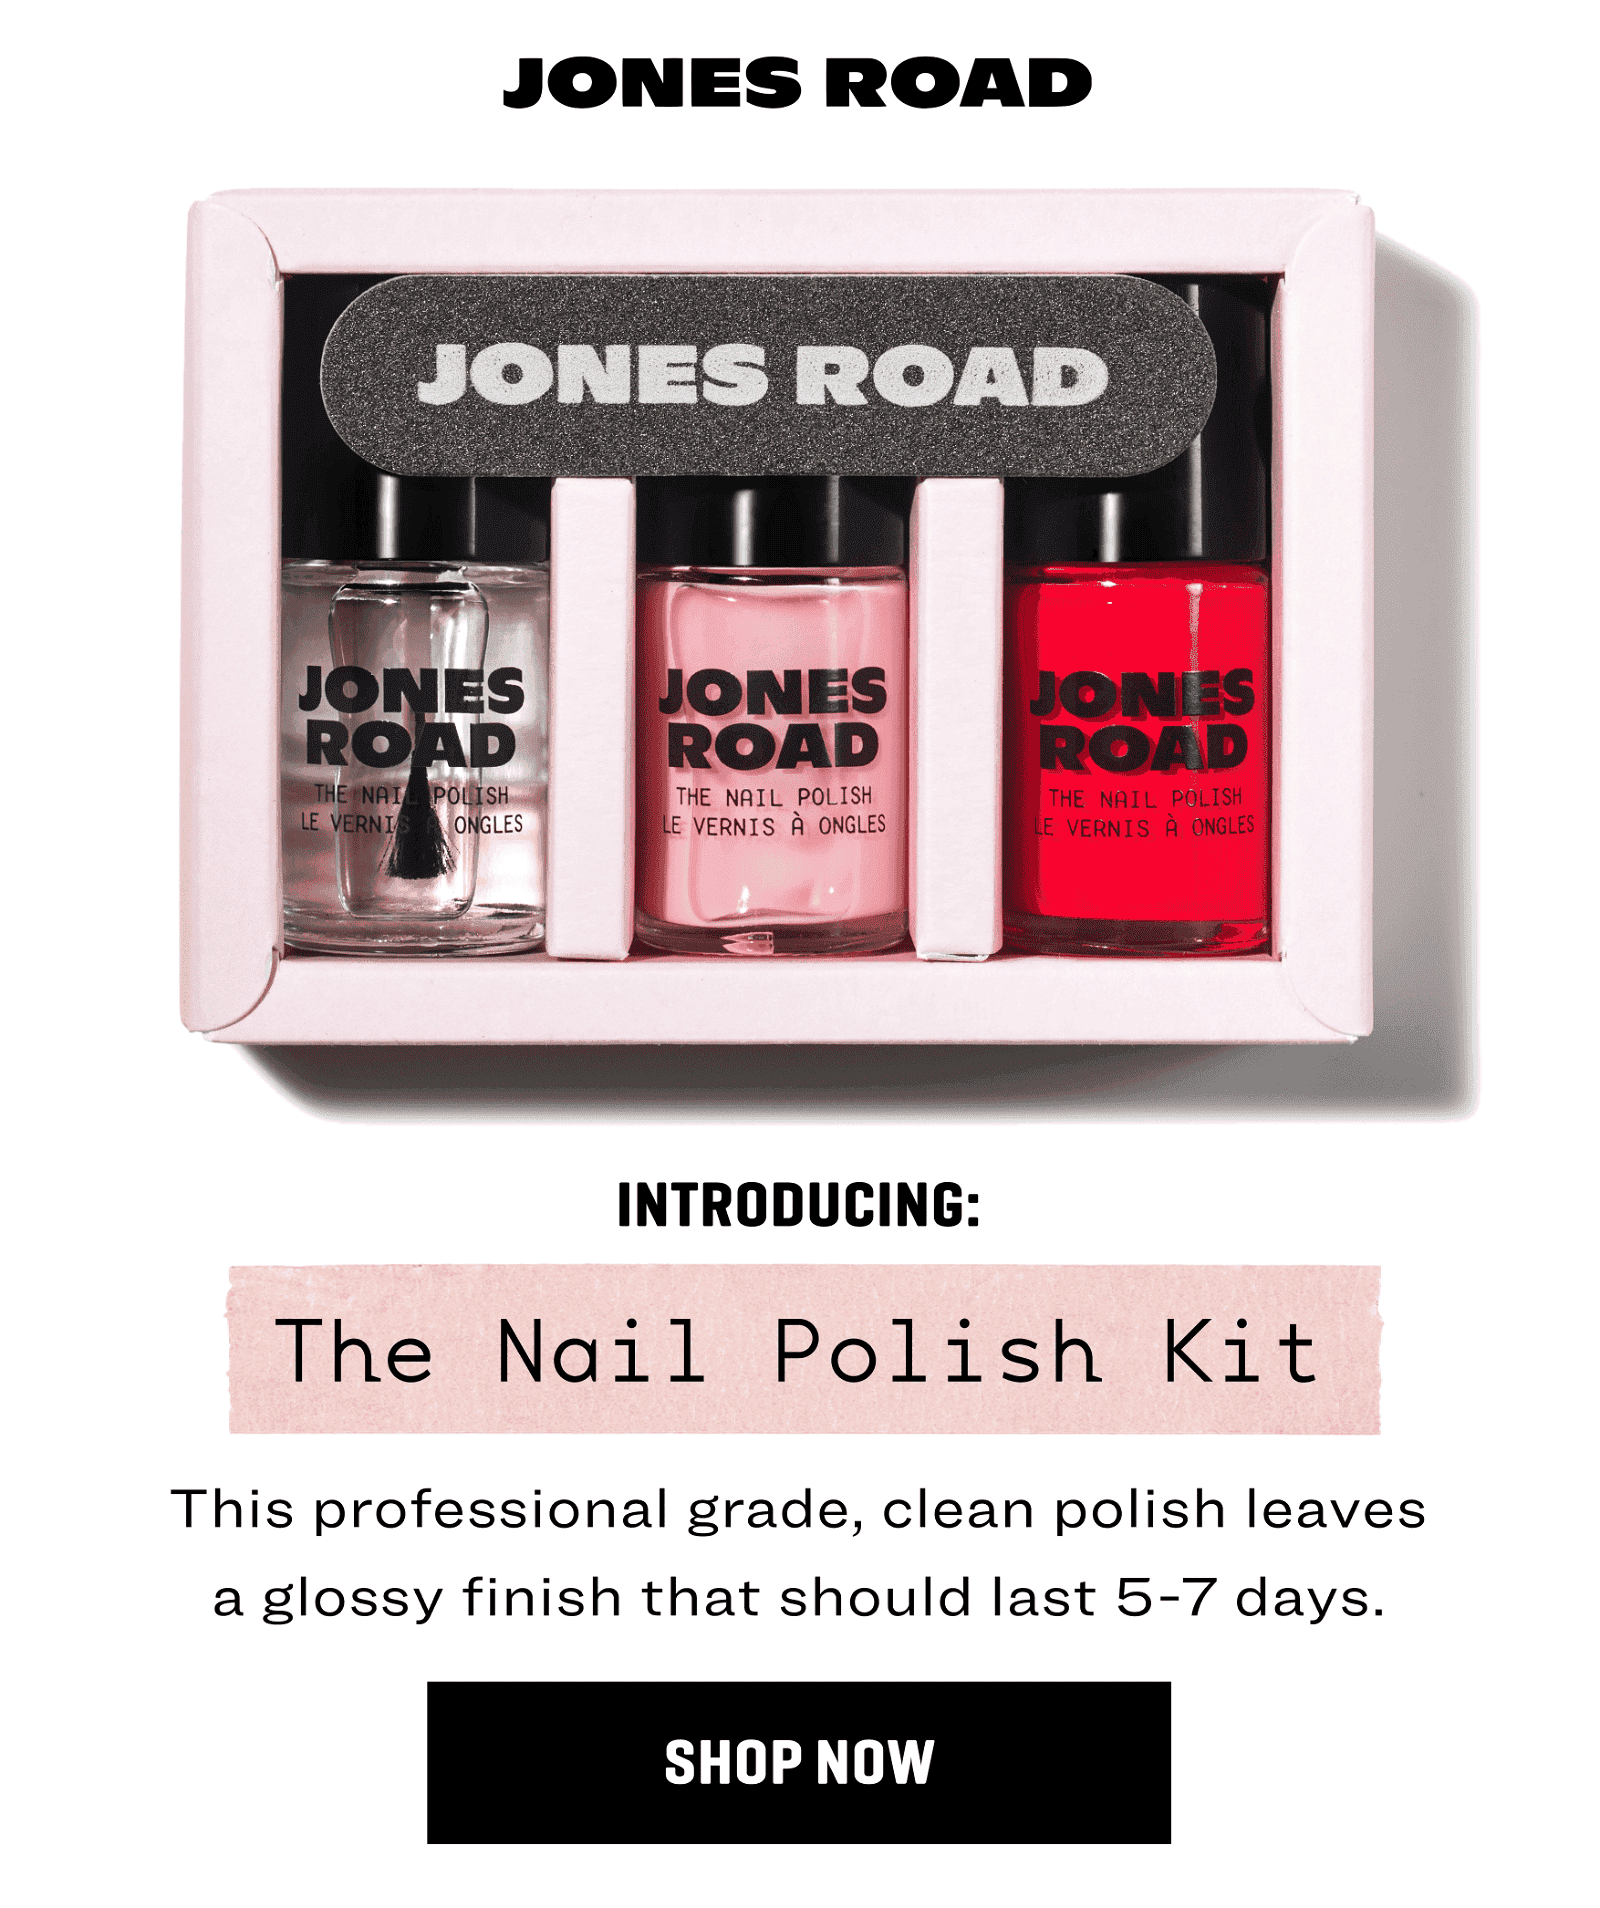 The Nail Polish